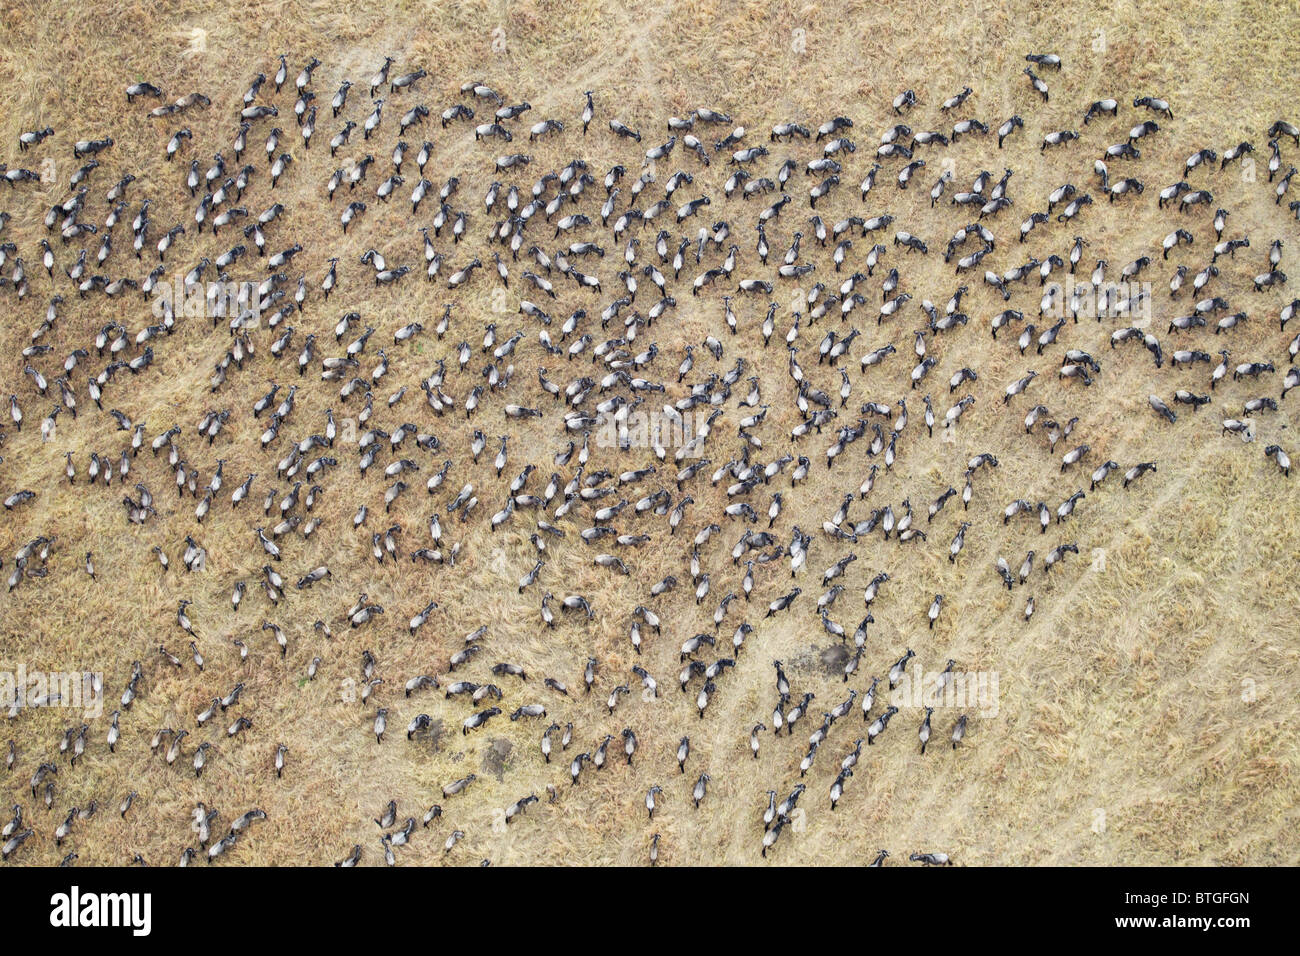 Vue aérienne de la migration des gnous. Jusqu'à 1,5 millions de gnous se déplacent dans le Mara/Serengeti chaque année. Kenya Banque D'Images